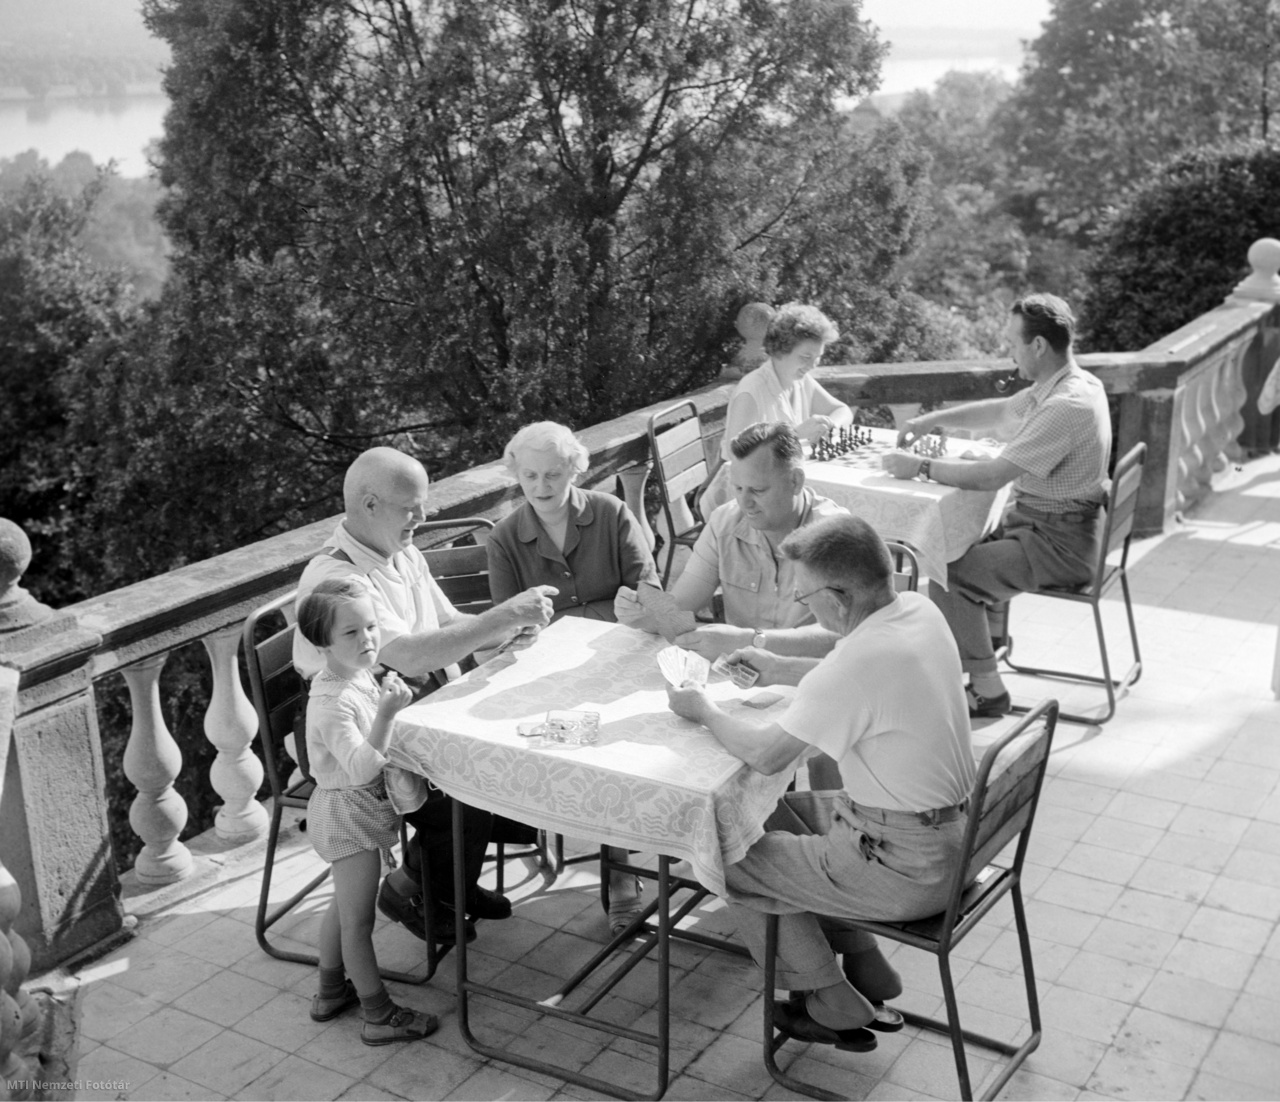 Nógrádverőce, 1959. június 26. Üdülővendégek kártyáznak és sakkoznak a Csepel Vas- és Fémművek nógrádverőcei üdülőjének teraszán.